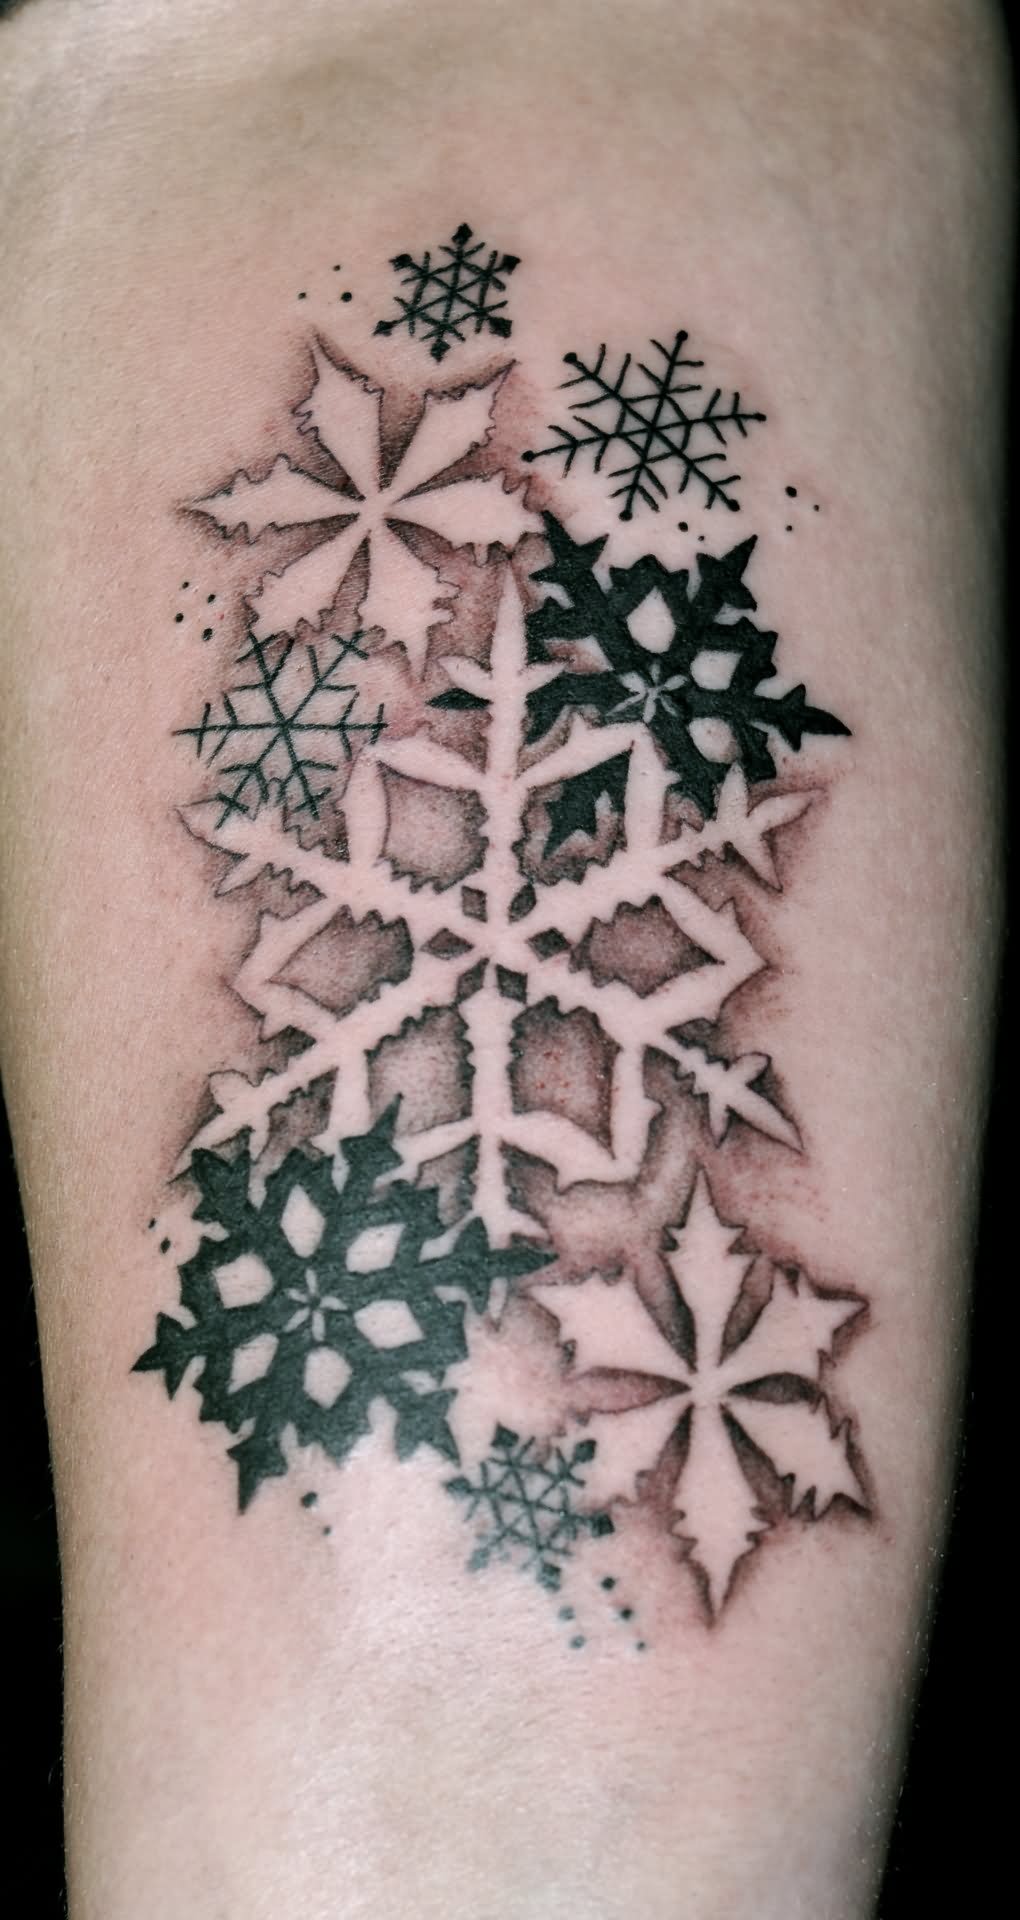 Black & white snowflakes tattoo